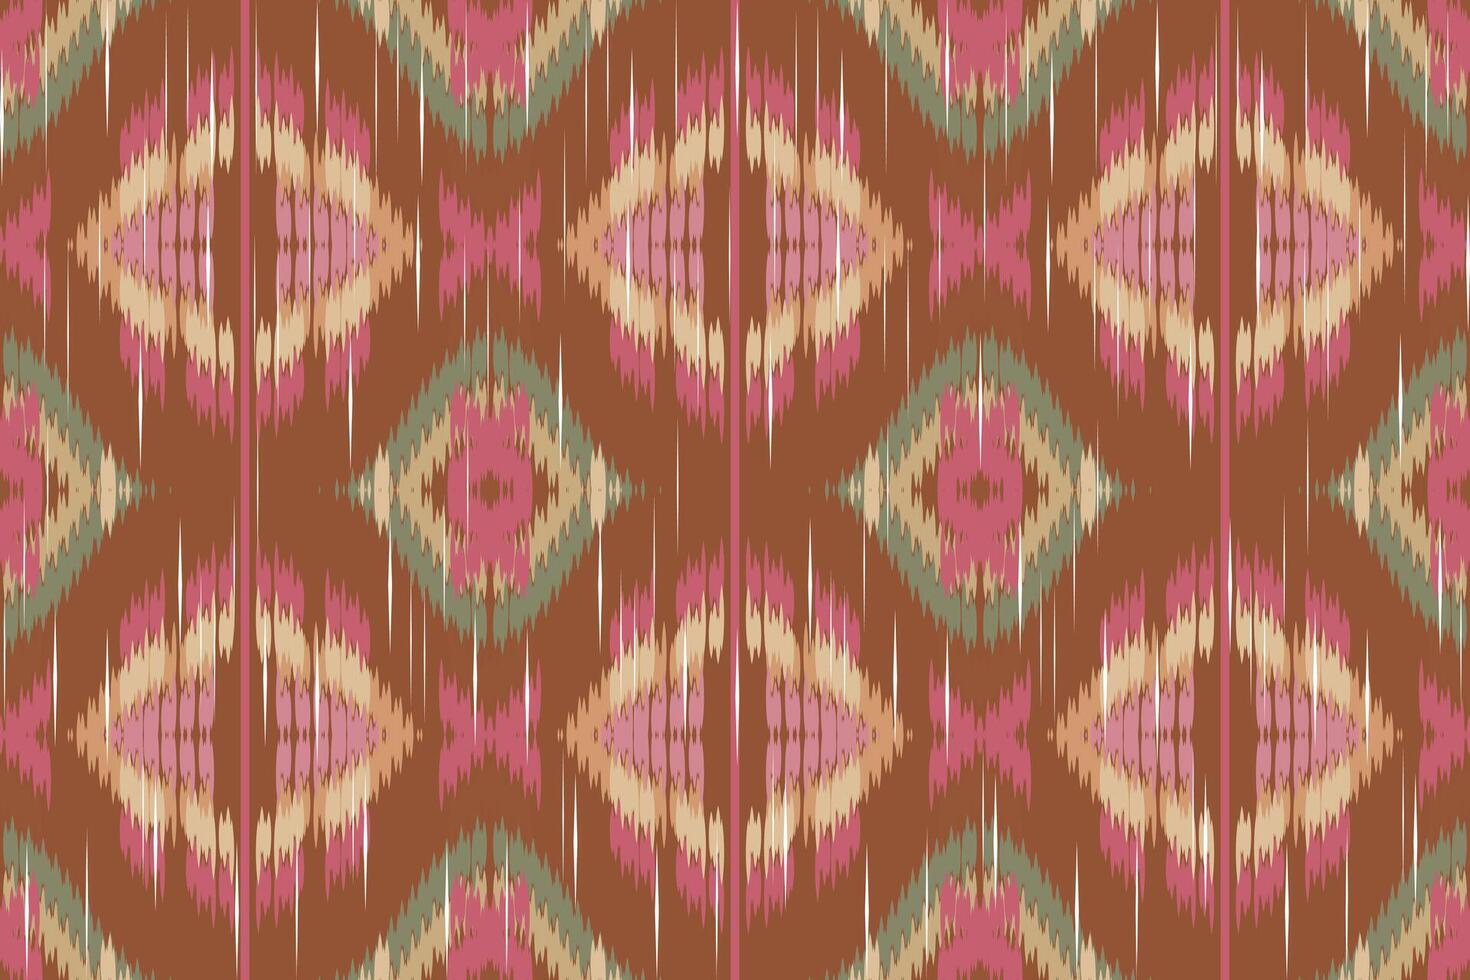 ikat paisley bordado em a tecido dentro Indonésia, Índia e ásia países.geométrico étnico oriental desatado padrão.aztec estilo. ilustração.design para textura,tecido,vestuário,embrulho,tapete. vetor